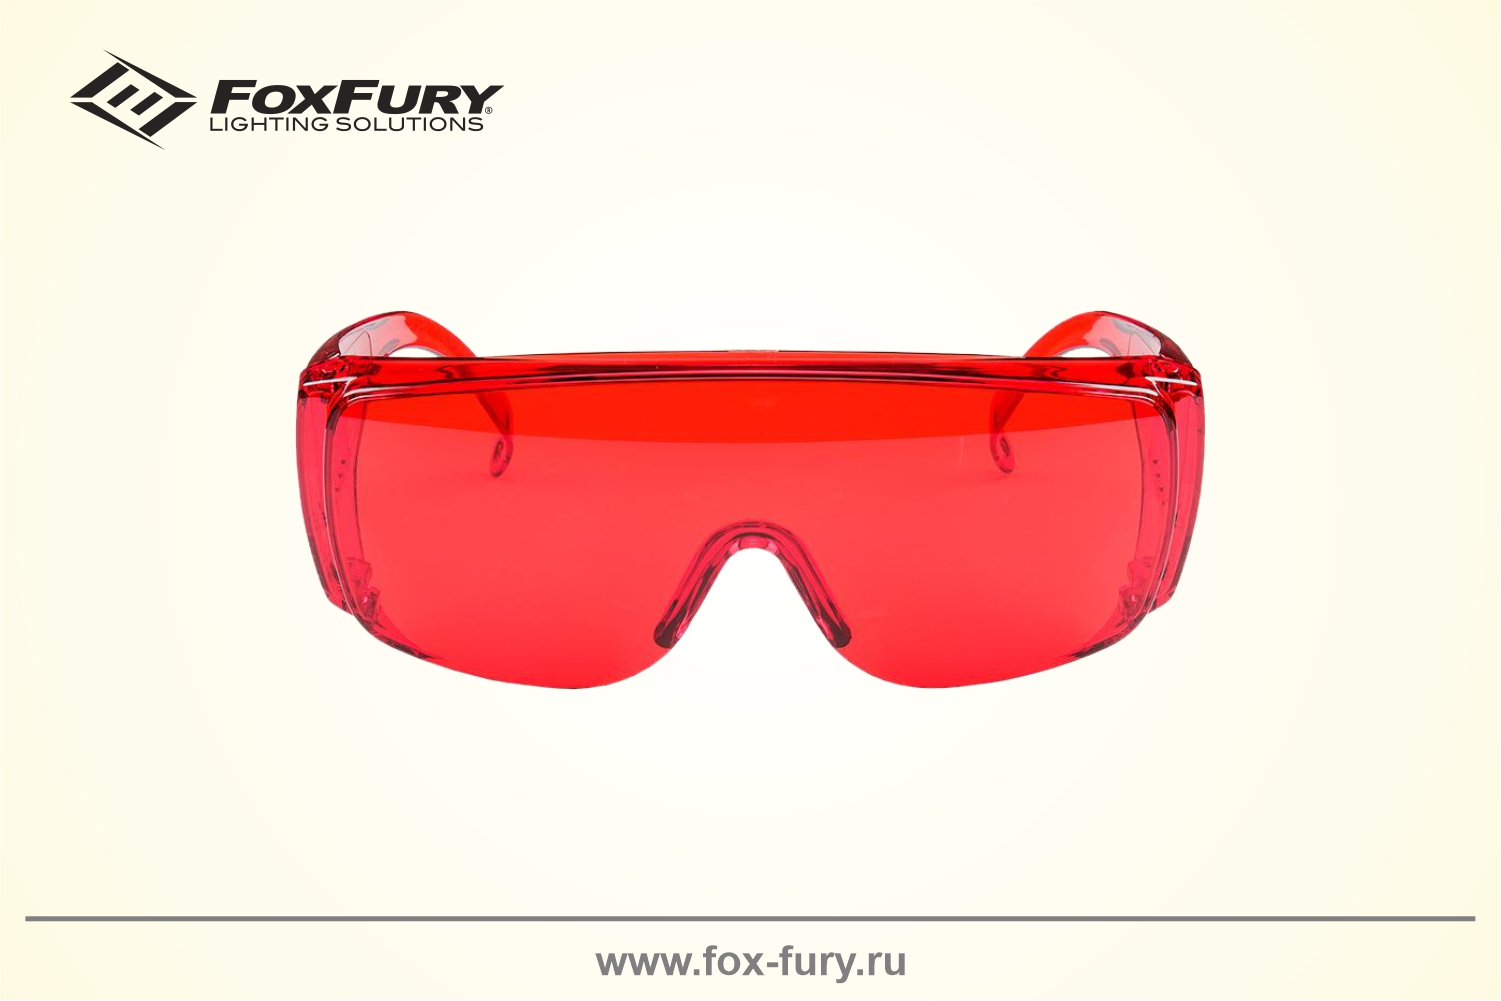 Очки для криминалистики FoxFury красные 600-1040